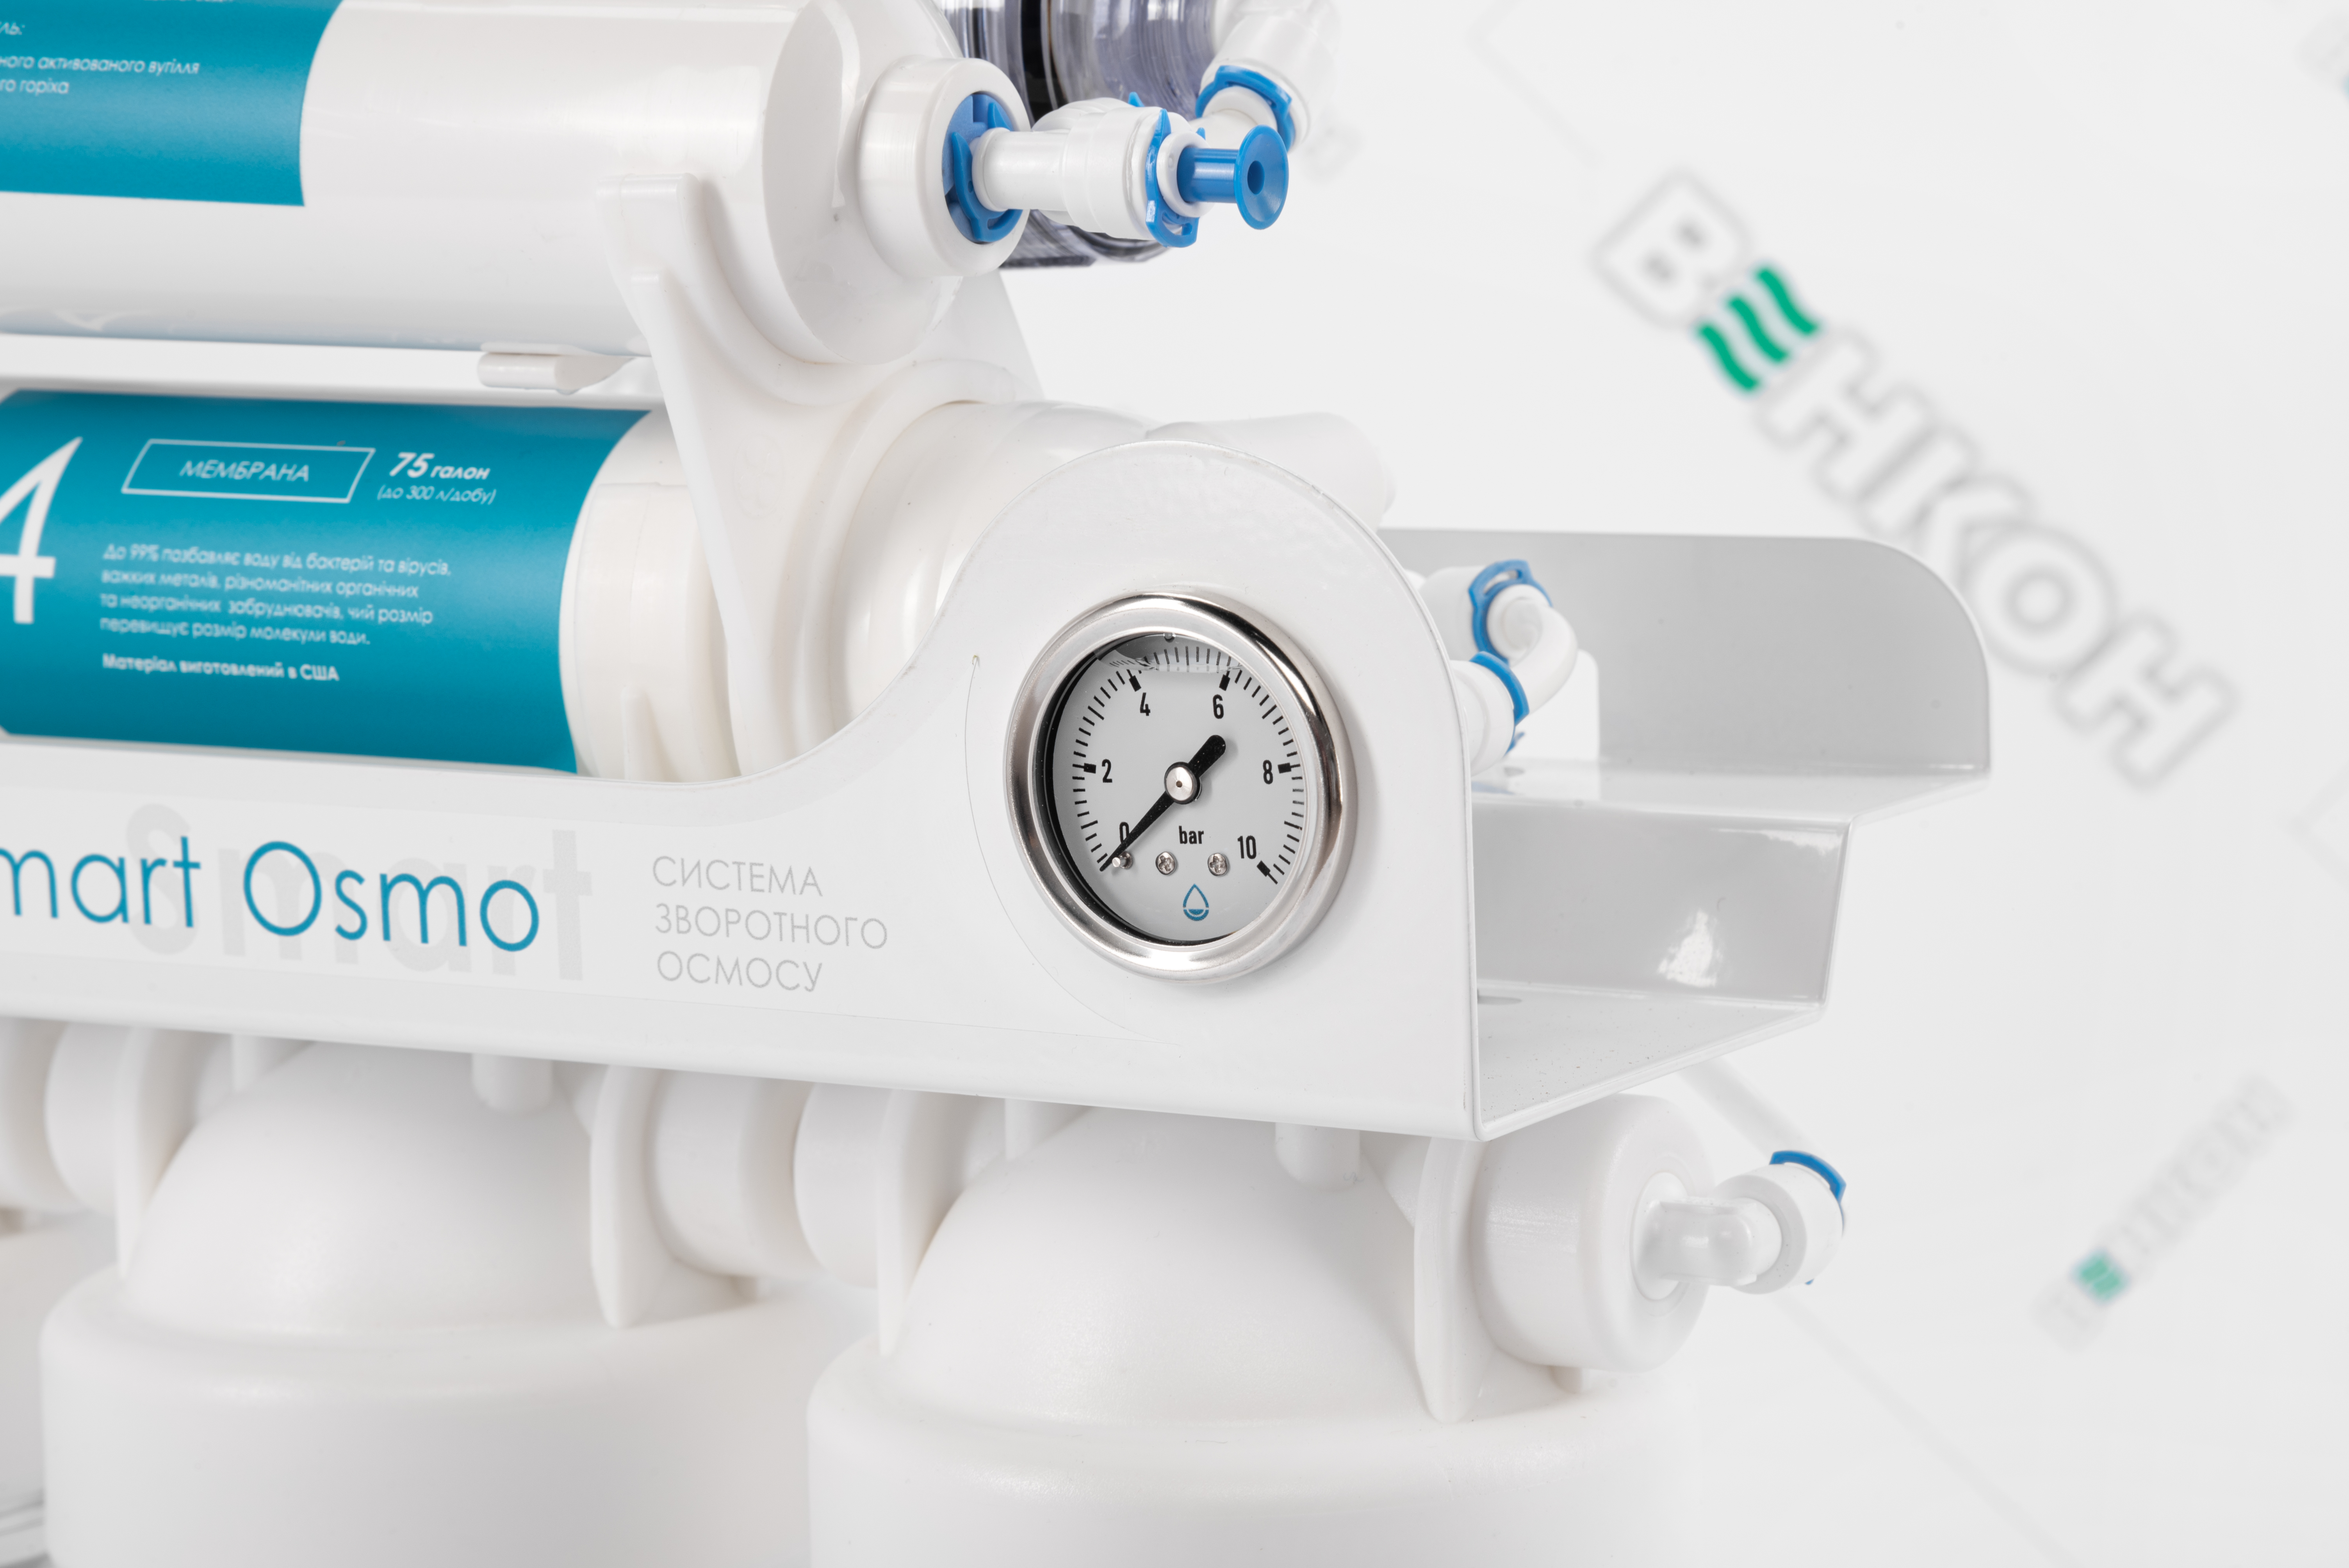 Фильтр для воды Organic Smart Osmo 8 обзор - фото 8